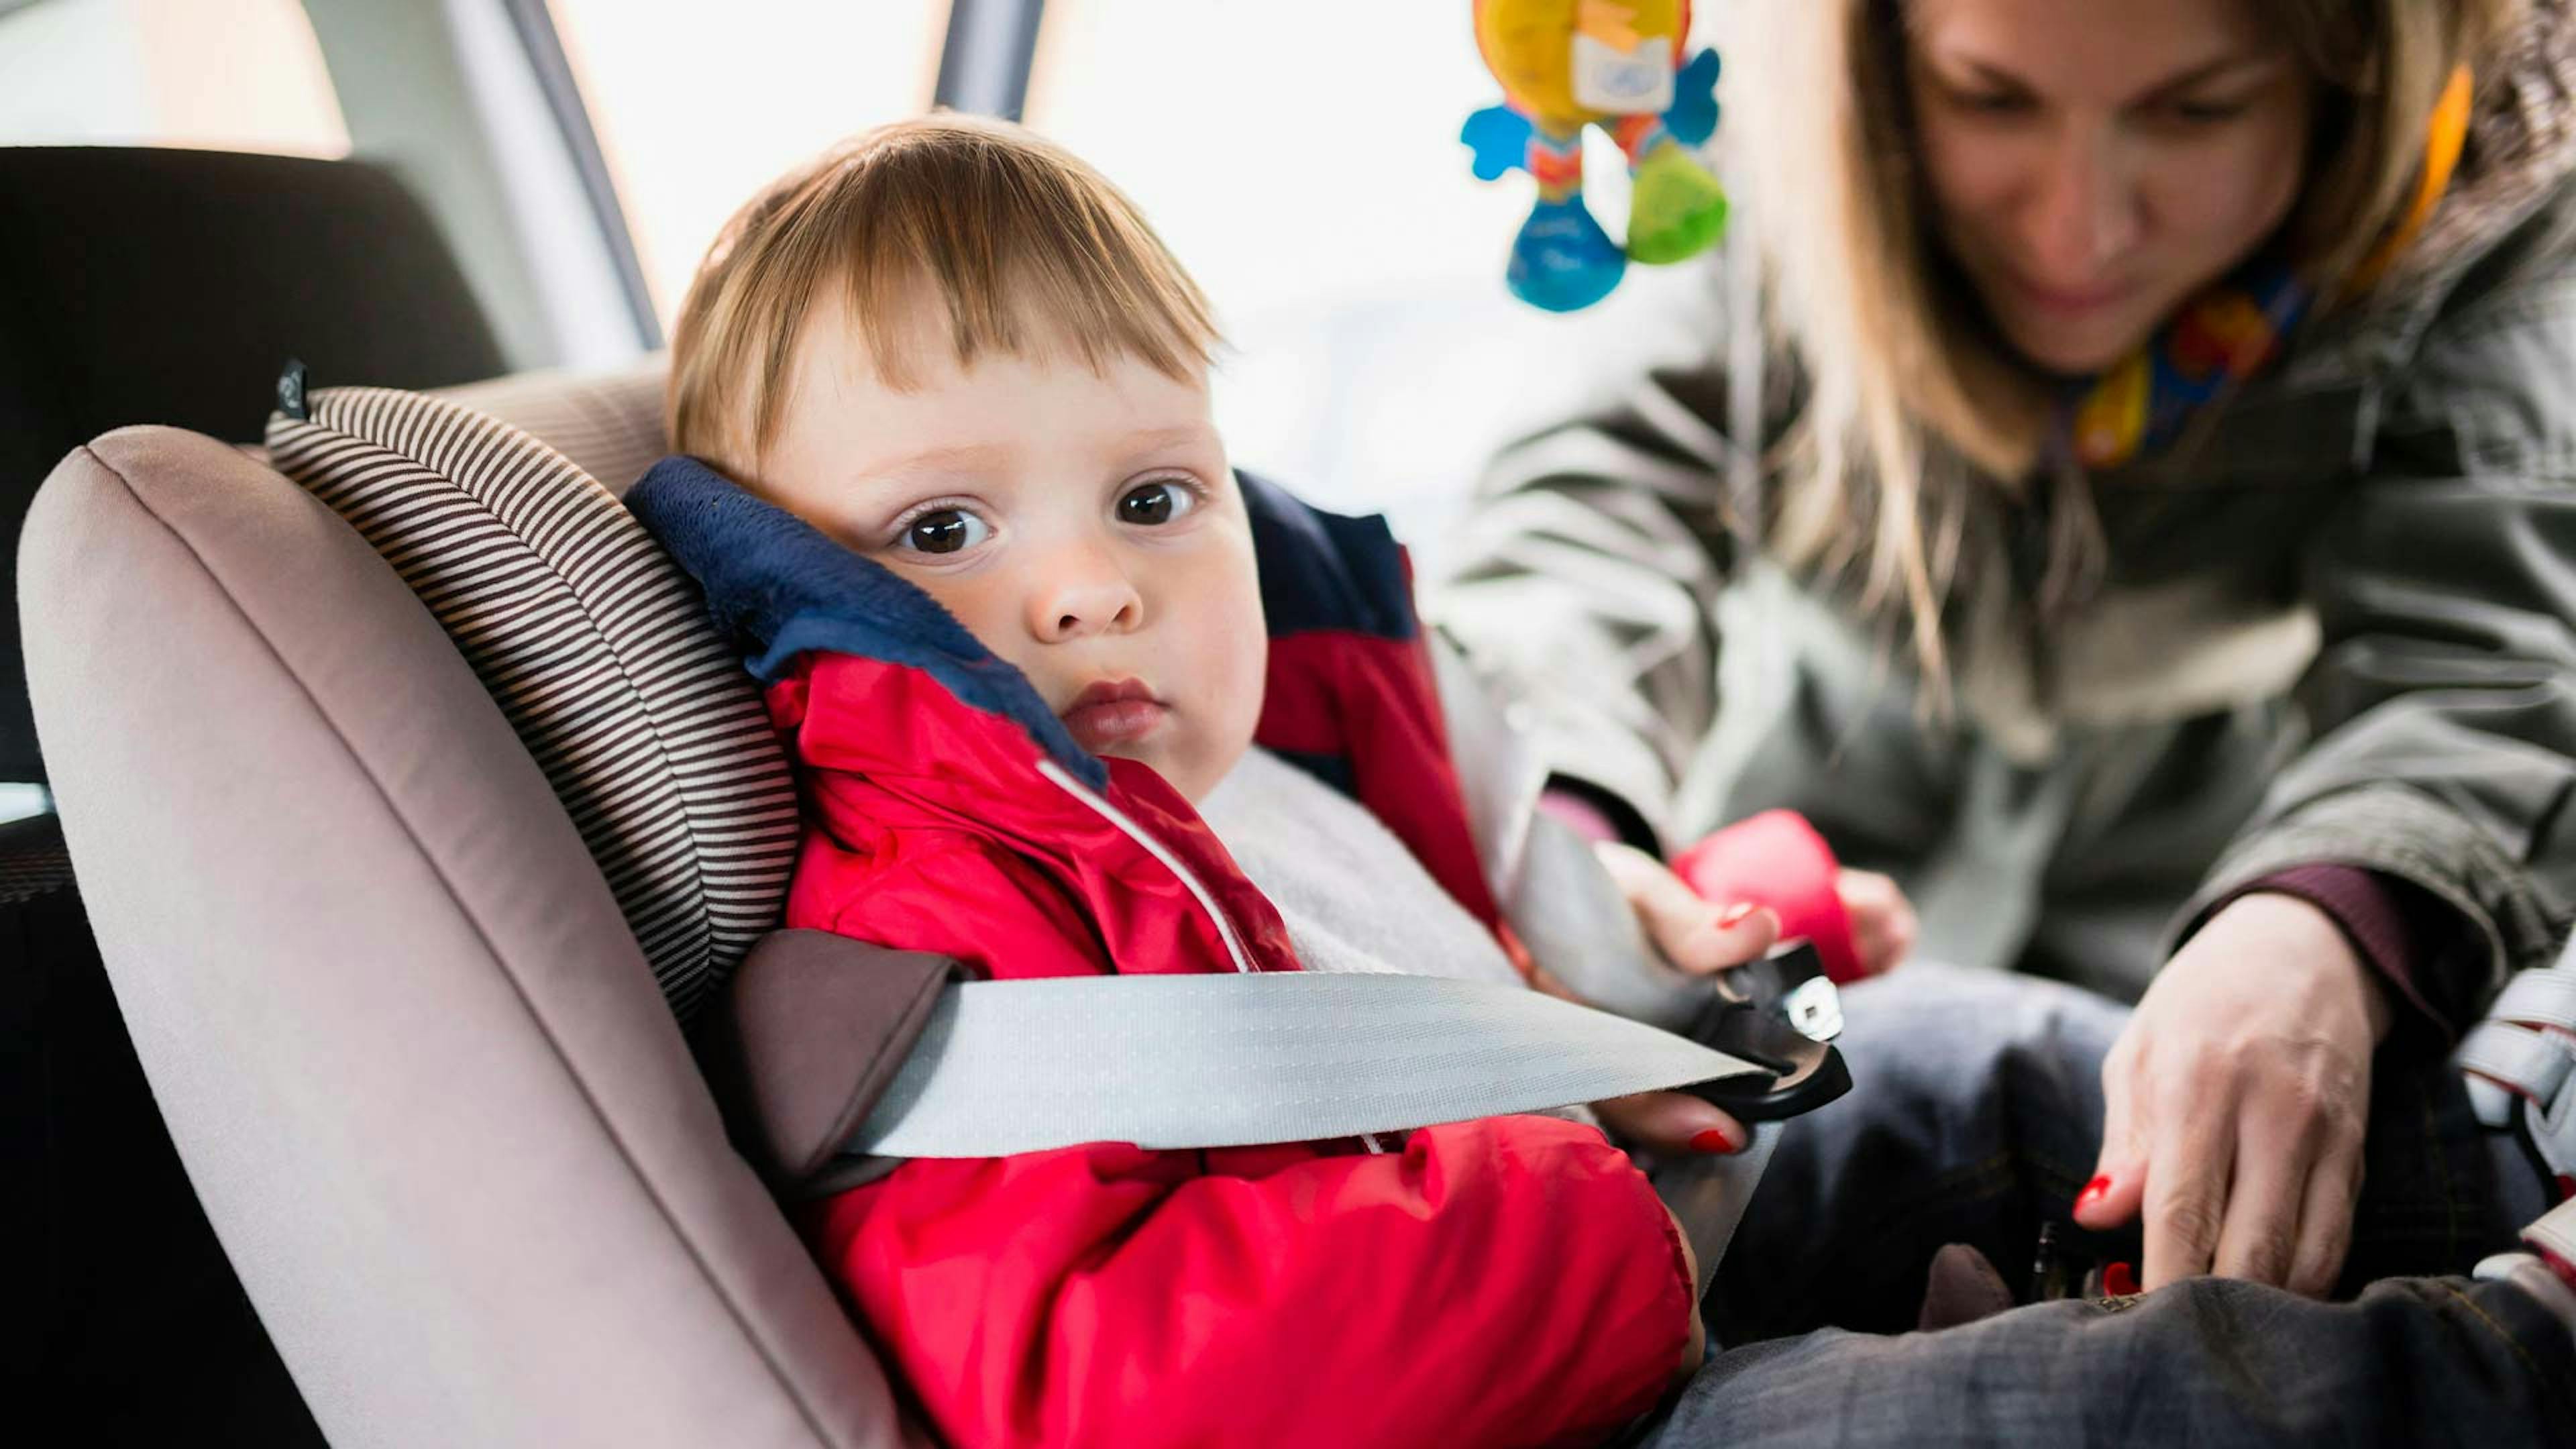 Пристегни ребенка в машине. Автокресло для детей. Автомобиль для детей. Ребёнок в автомобиле пристёгнут. Ребенок в детском кресле.